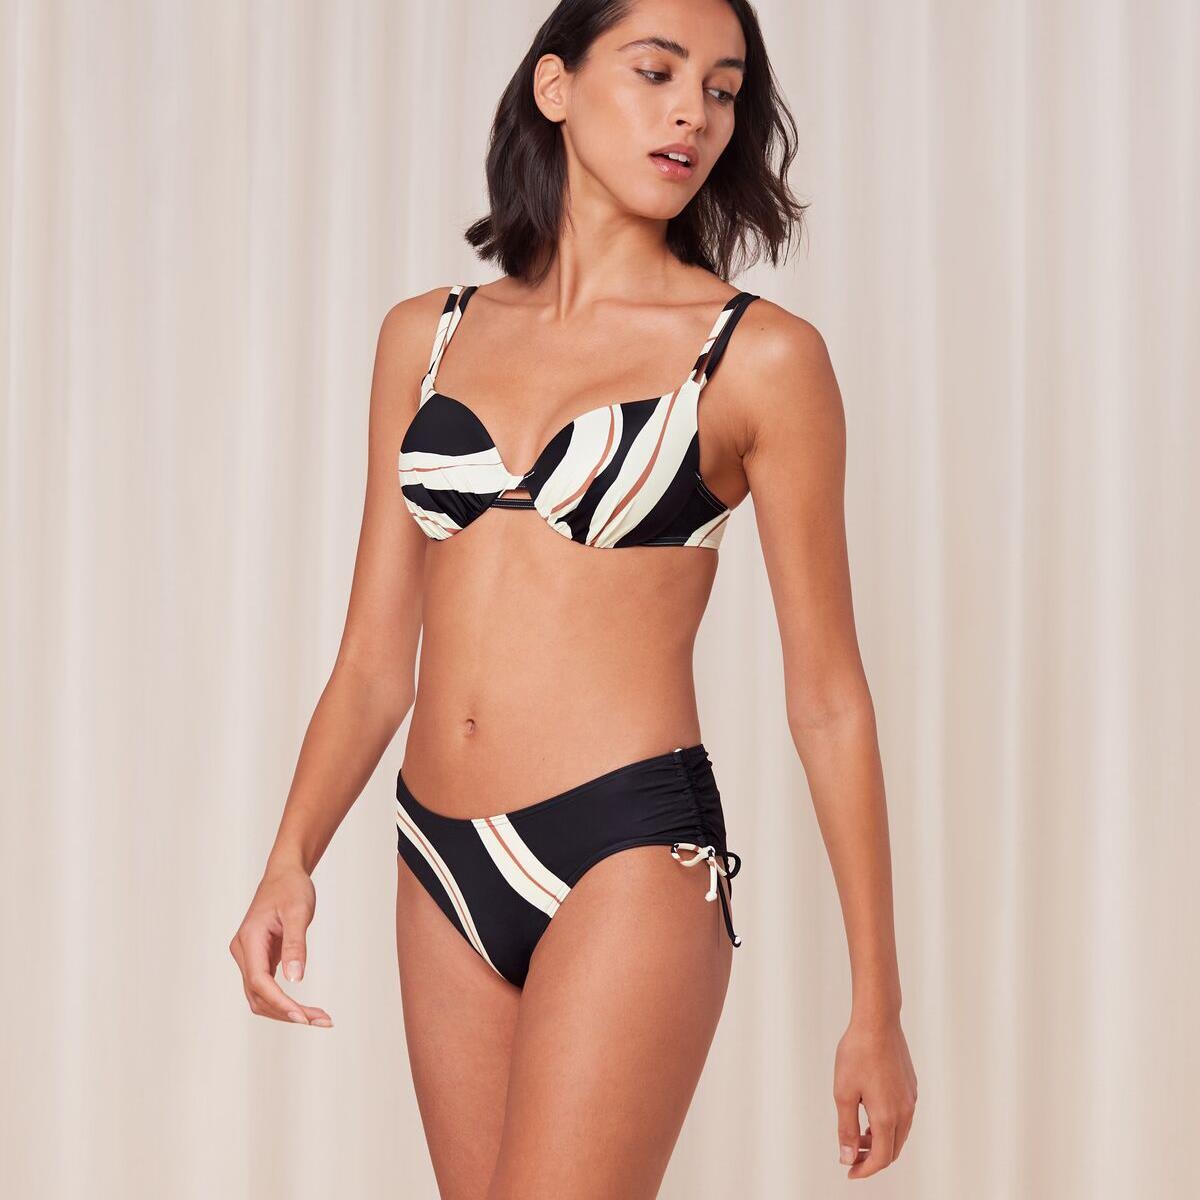 Triumph Summer Rød Bikini Top Med Bøjle, Farve: Sort/Hvid, Størrelse: 42D, Dame